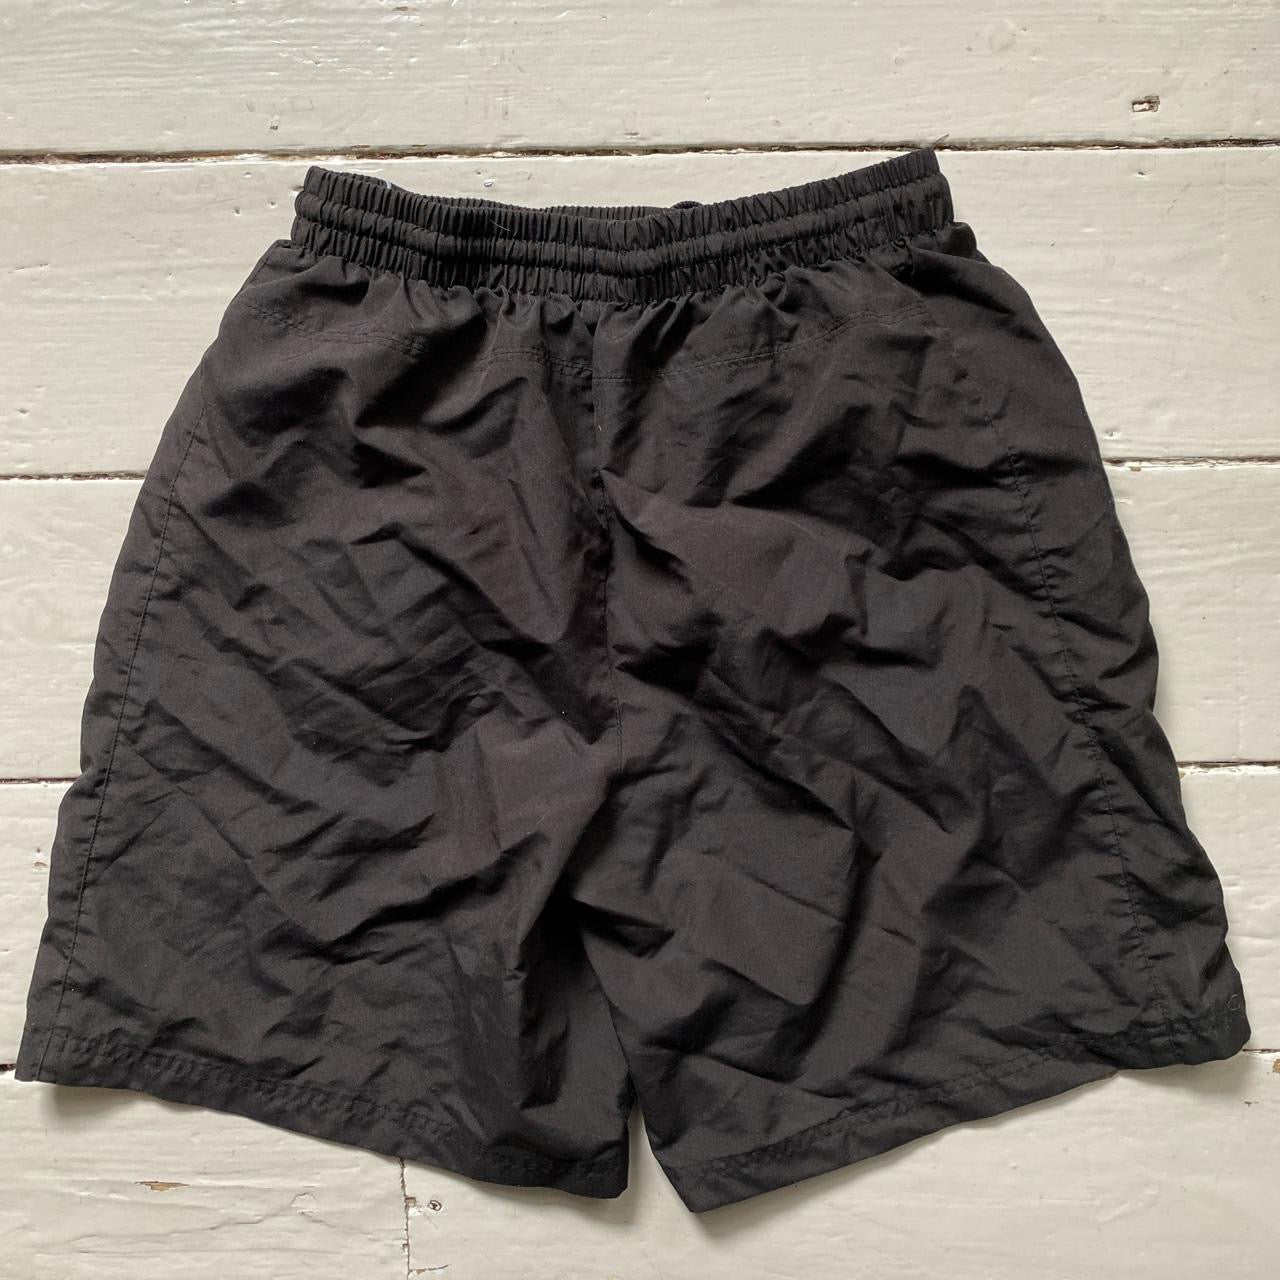 Umbro Shell Shorts (Large)